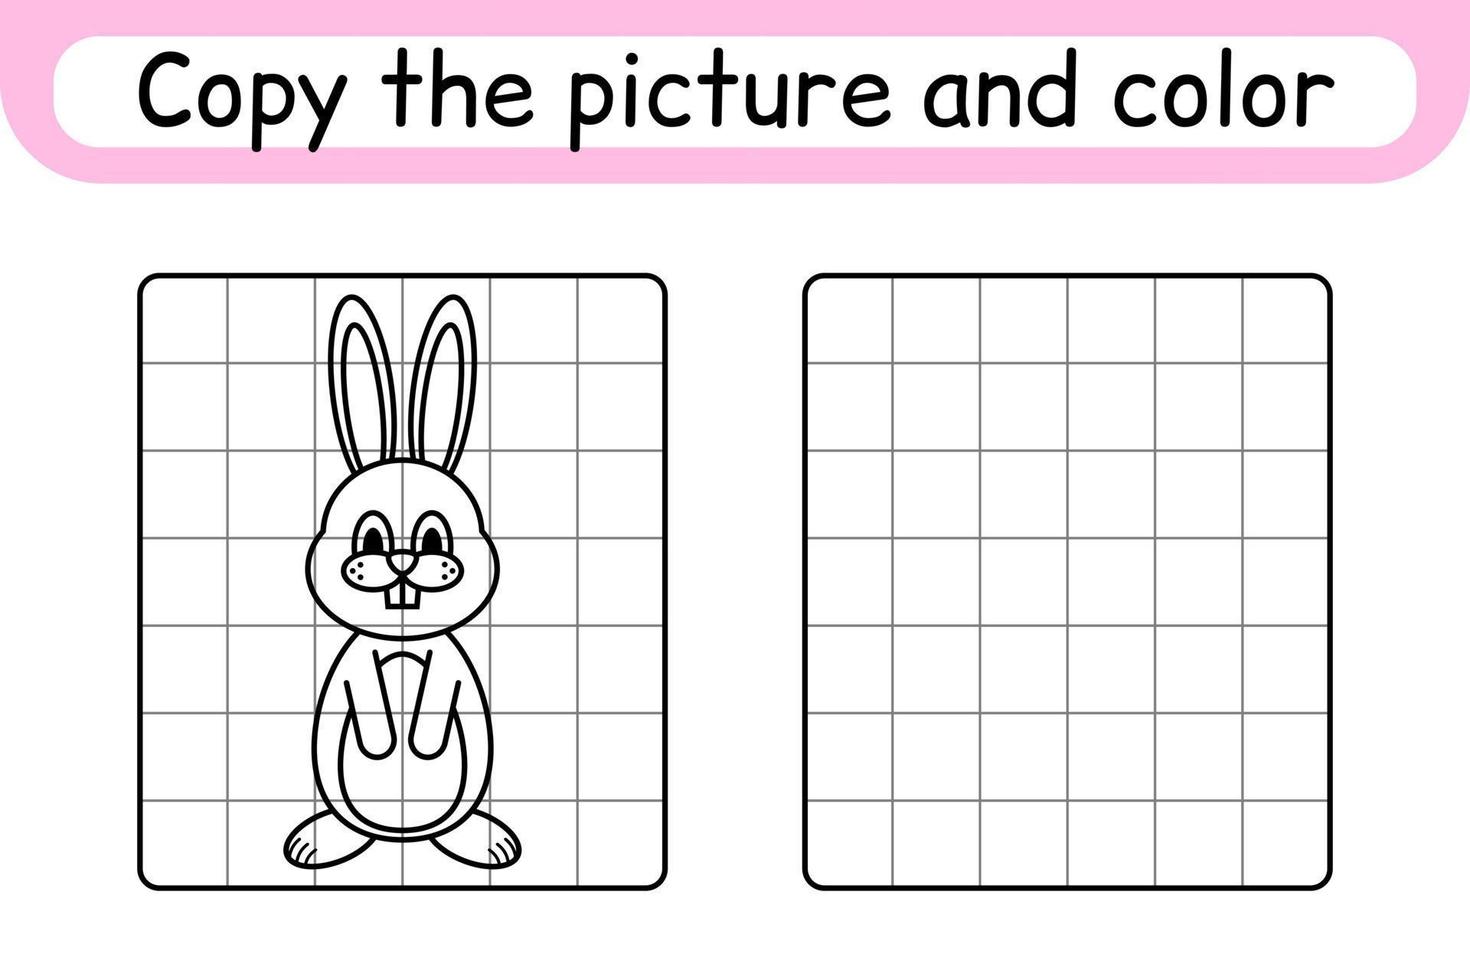 kopieer de afbeelding en kleur konijn. maak het plaatje compleet. maak het beeld af. kleurboek. educatief tekenoefenspel voor kinderen vector